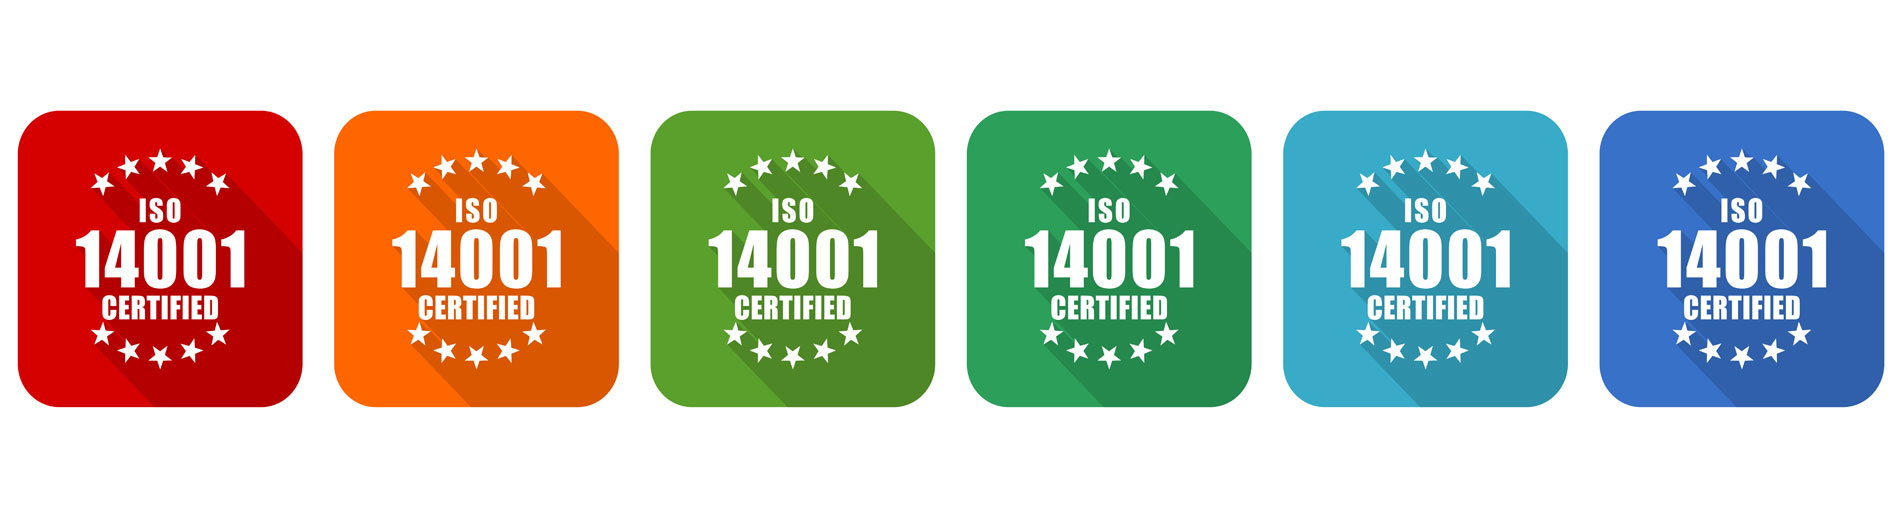 תקן ISO 14001 – תקן באיכות הסביבה